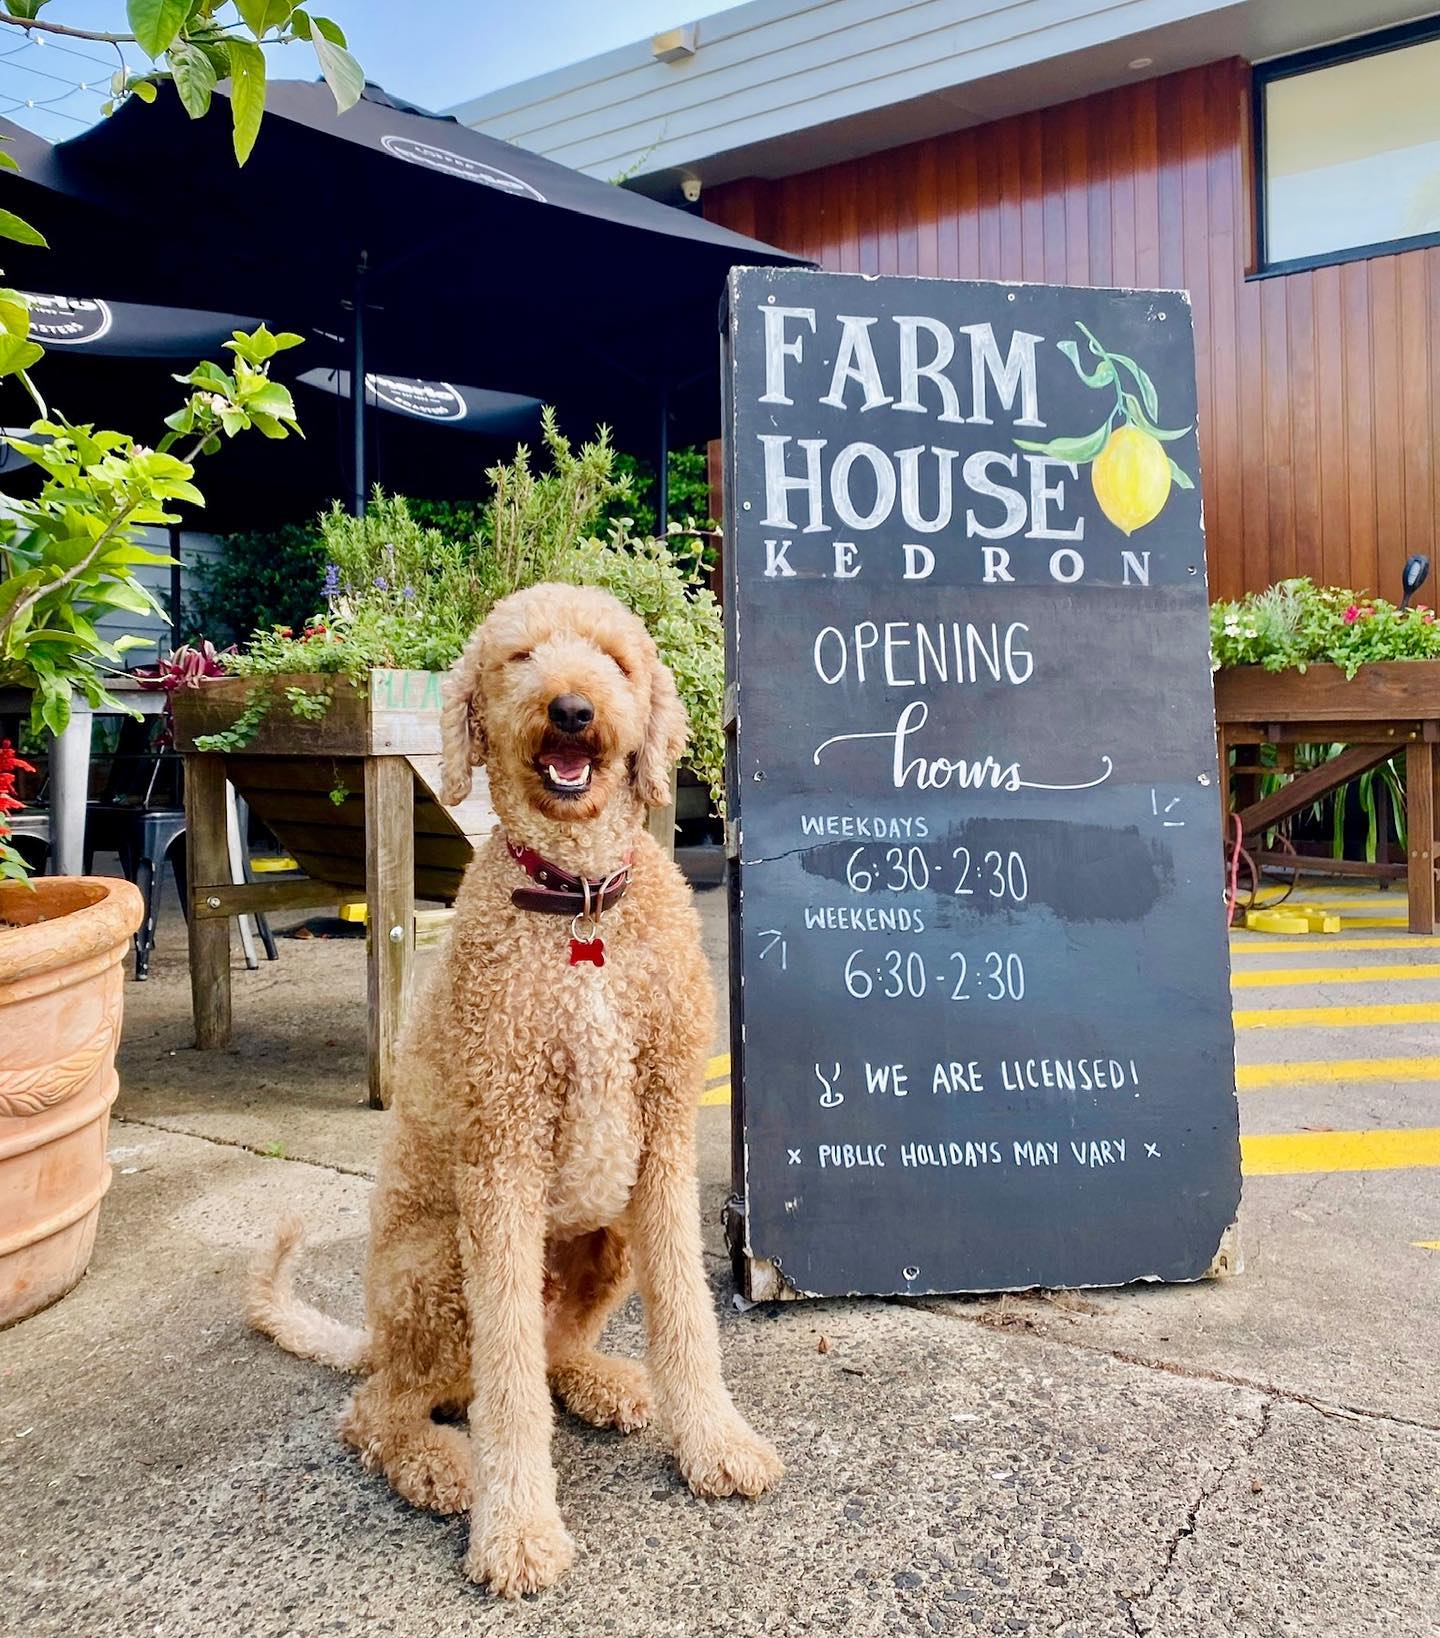 A dog next to a Farmhouse sign.